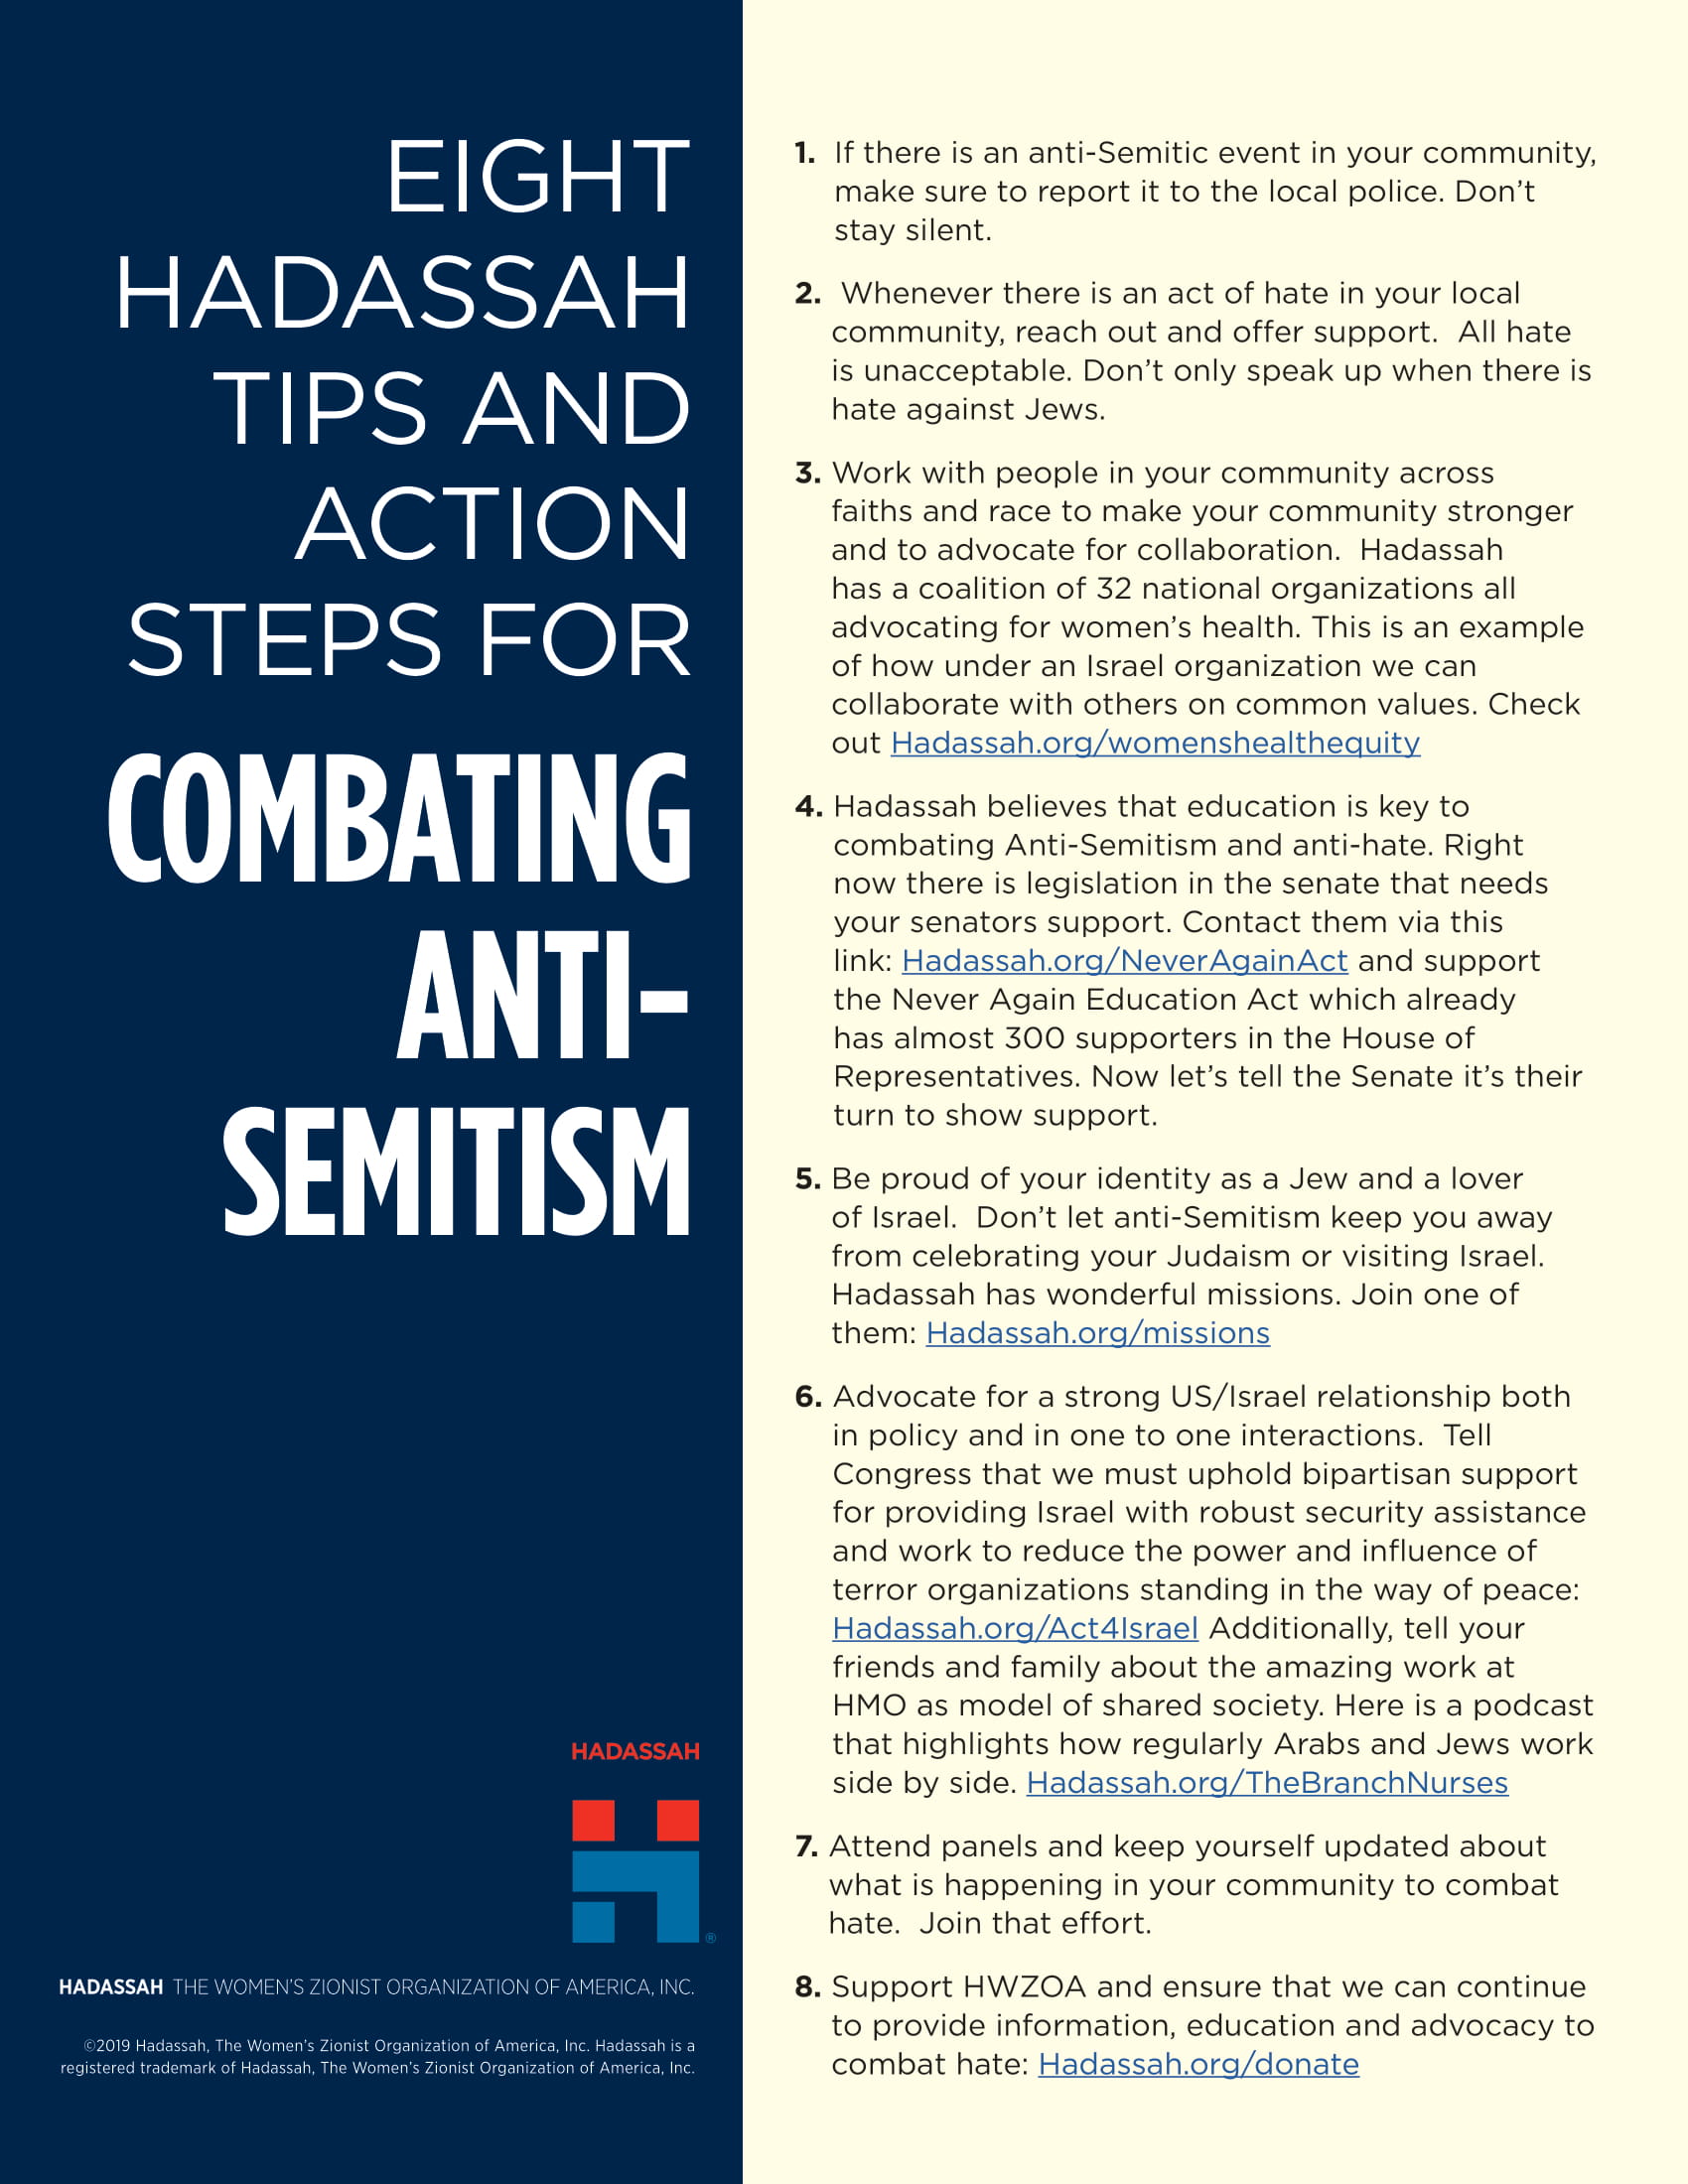 2. guide-to-combating-anti-semitism-12.30.19-1.jpg